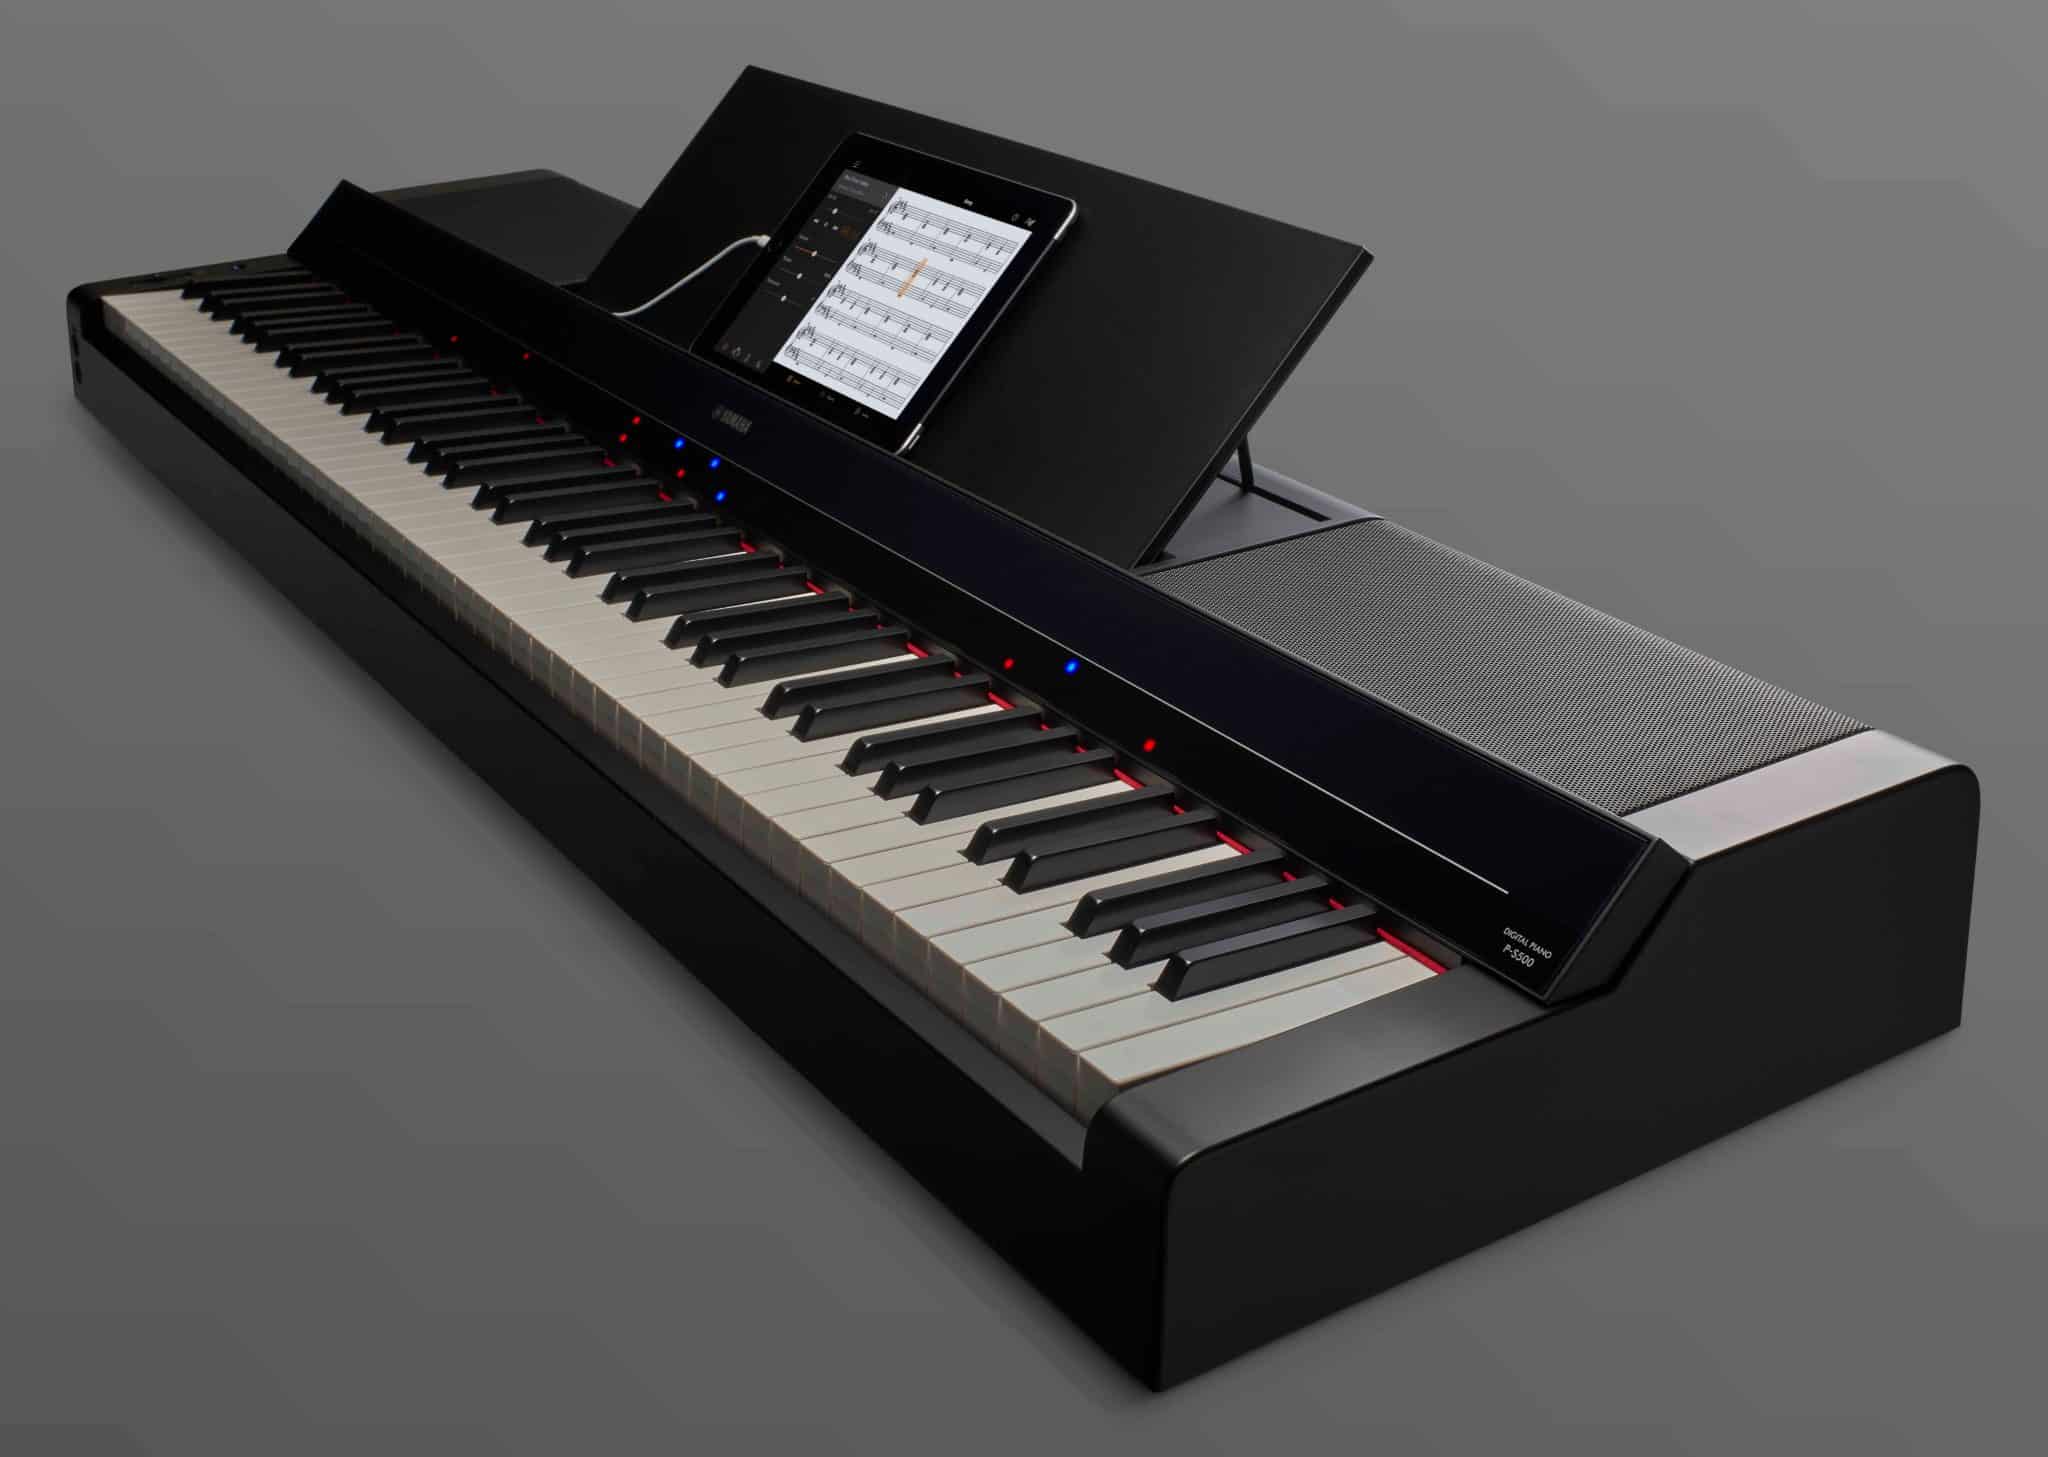 Piano numérique YAMAHA P-S500